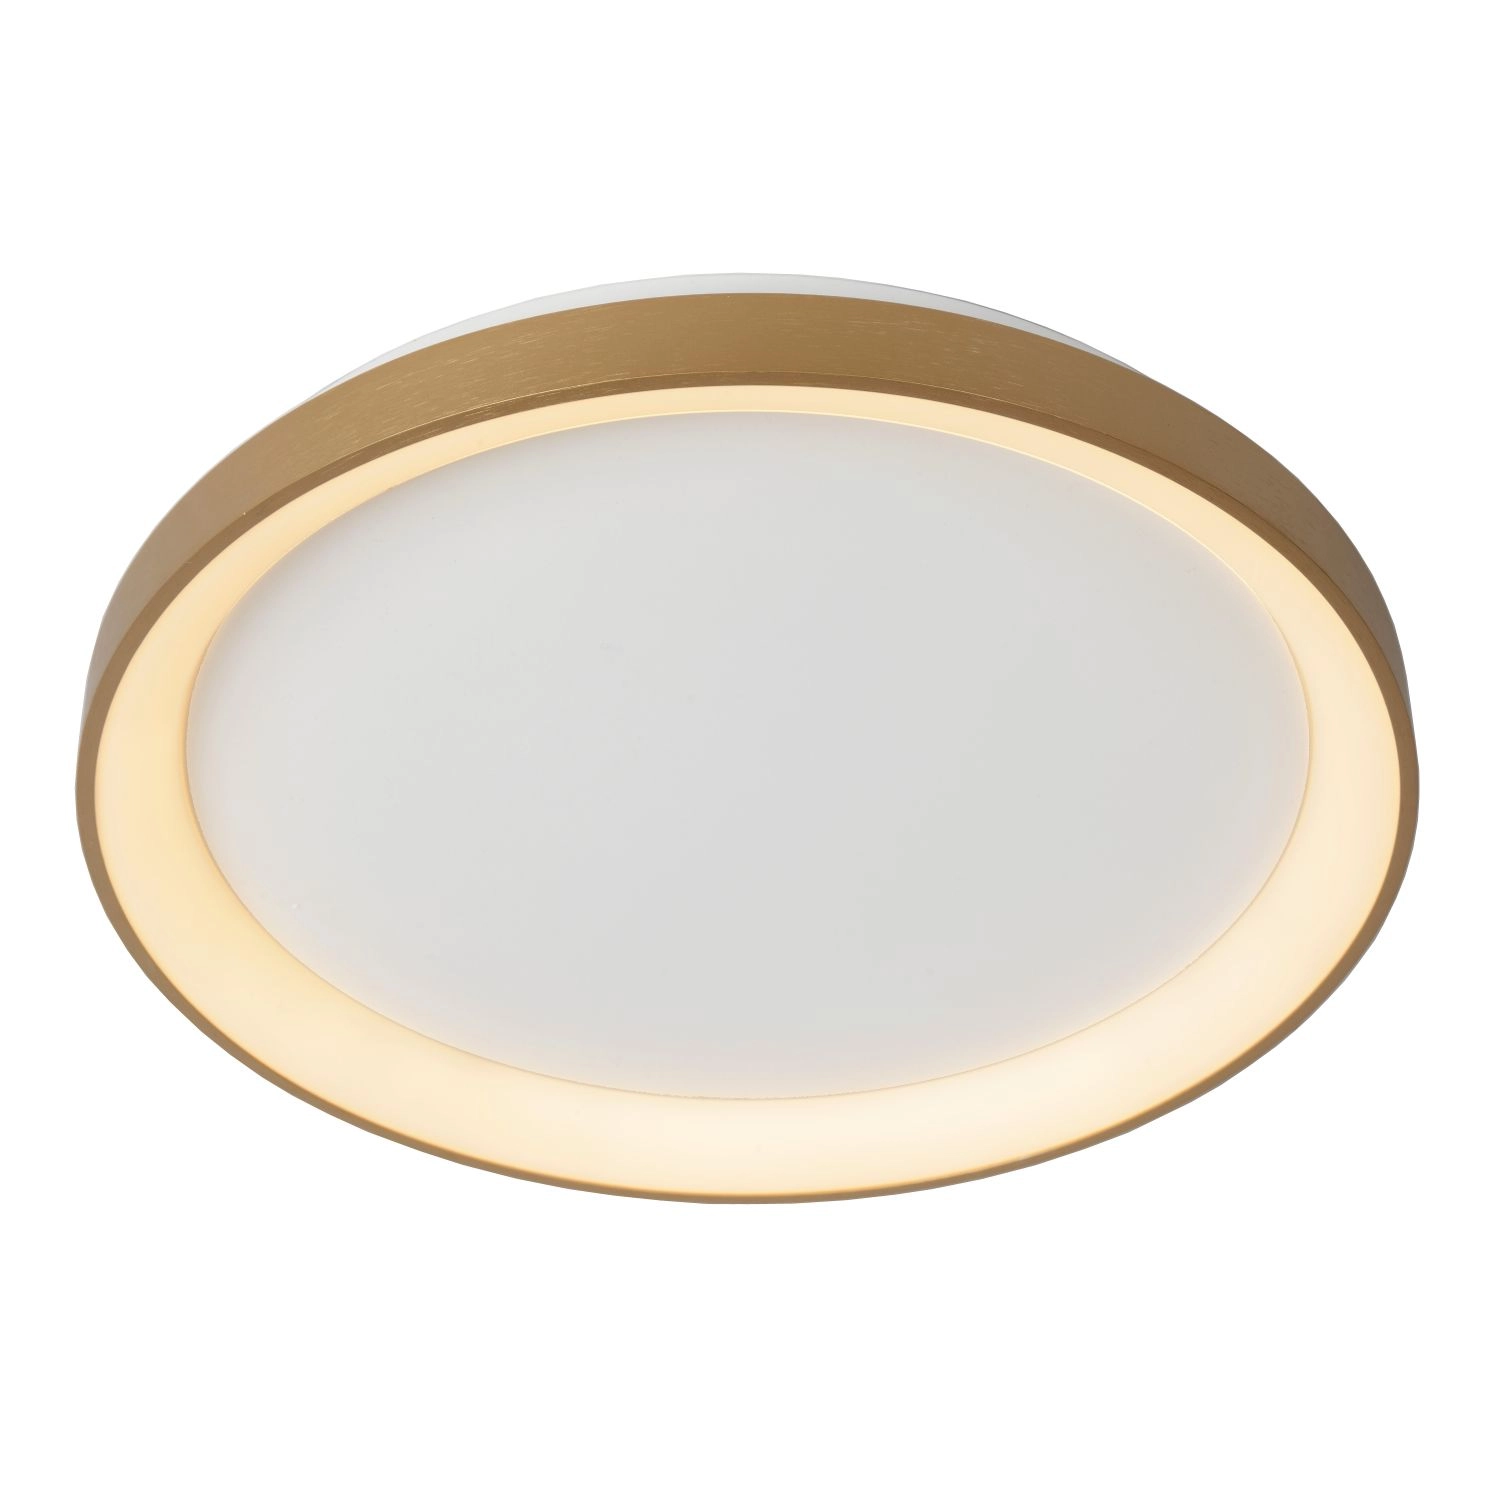 LU 46103/38/02 Lucide VIDAL - Flush ceiling light - Ø 48 cm - LED Dim. - 1x38W 2700K - Matt Gold / B